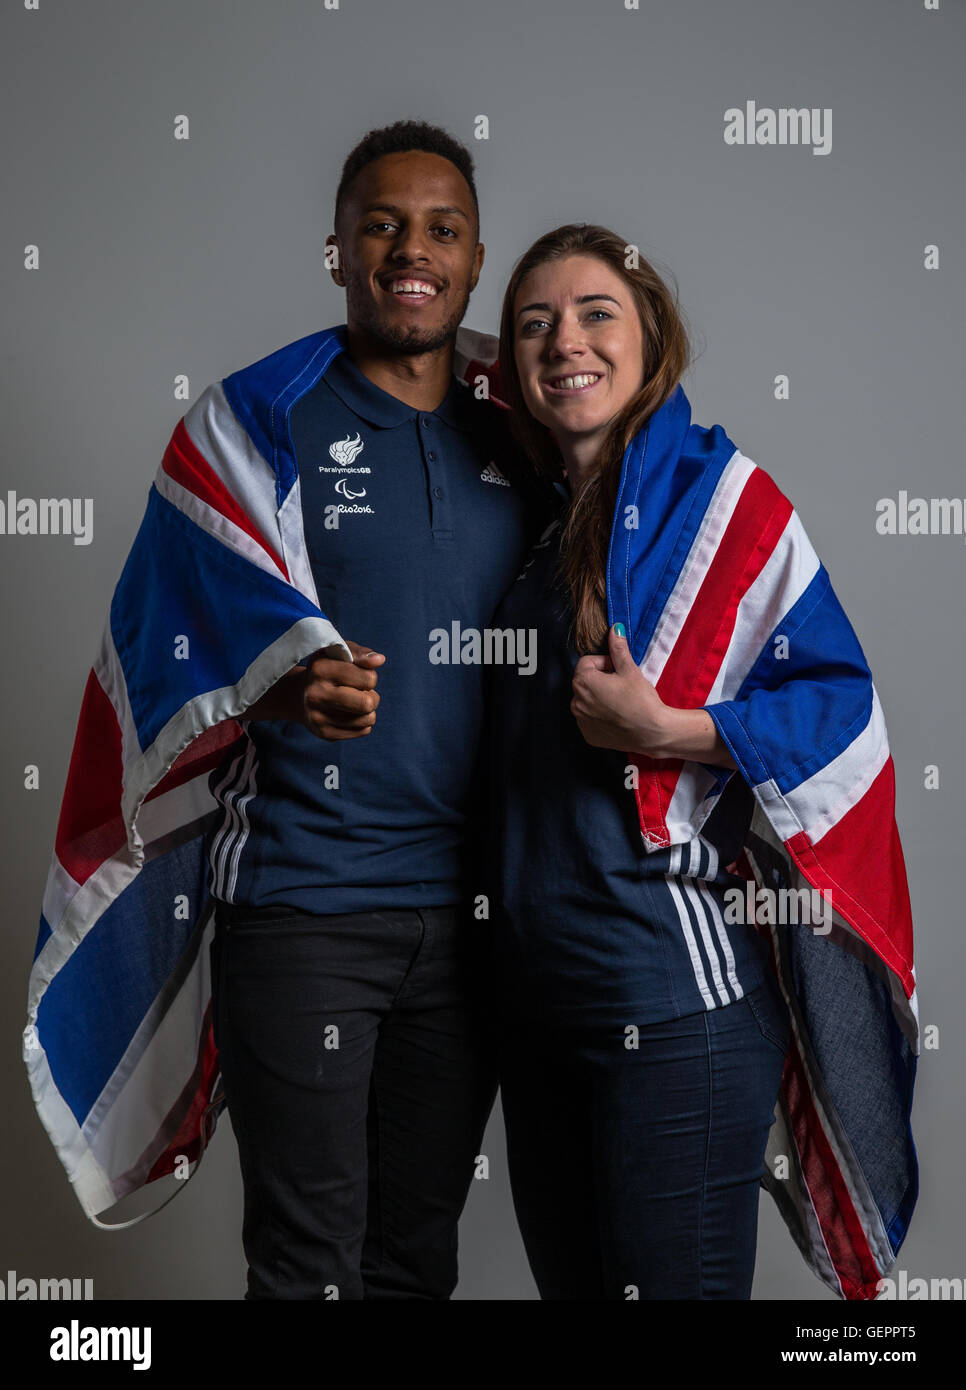 Grande-bretagne's Guide runner Chris Clarke et Libby Clegg (T11 100m & 200m) pose au cours d'une équipe d'athlétisme annonce ParalympicsGB chez Deloitte, Londres. Banque D'Images